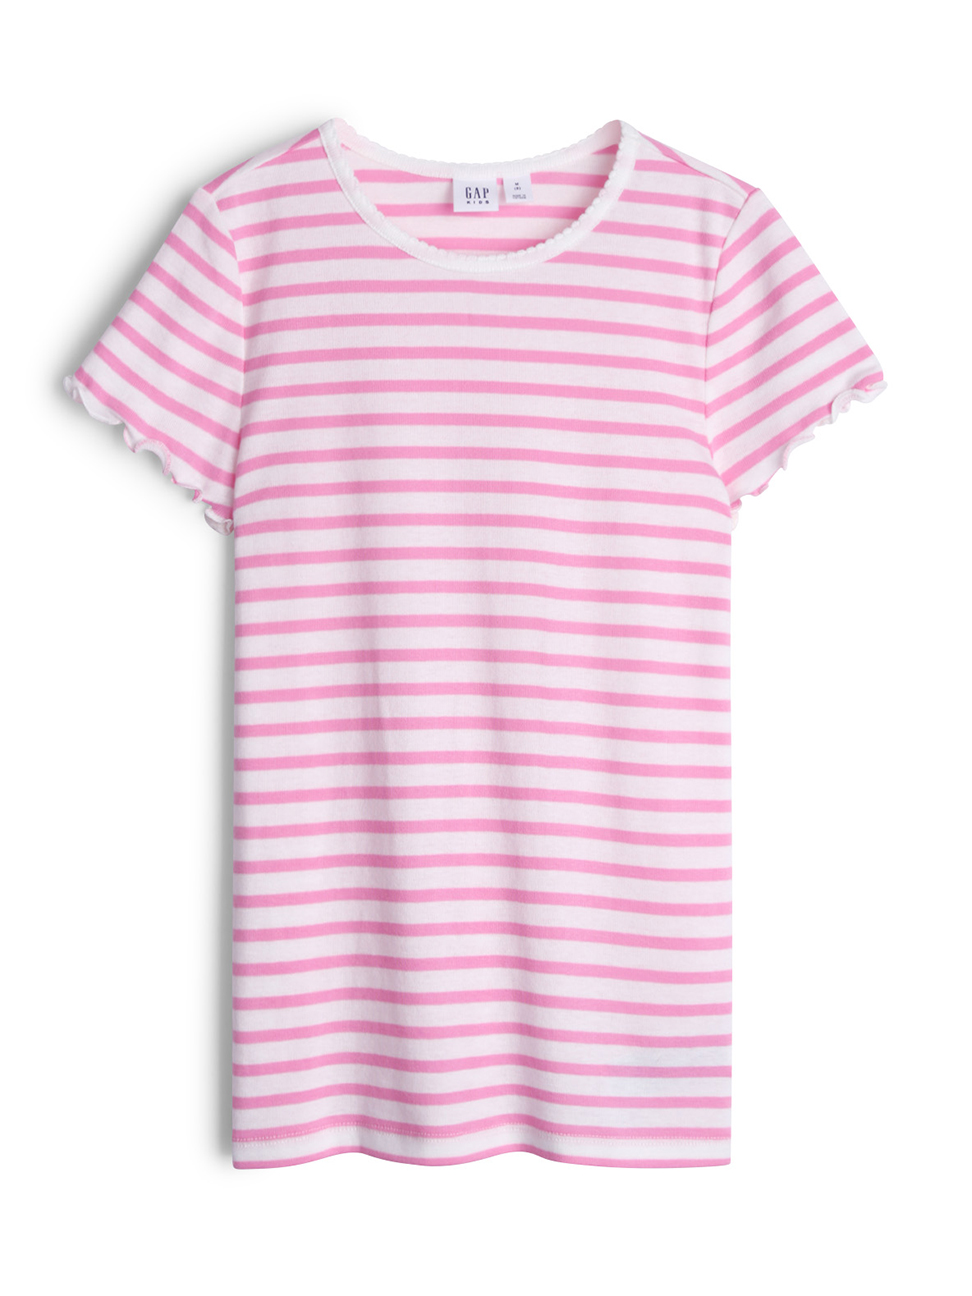 女童裝|荷葉邊圓領短袖T恤-粉色條紋